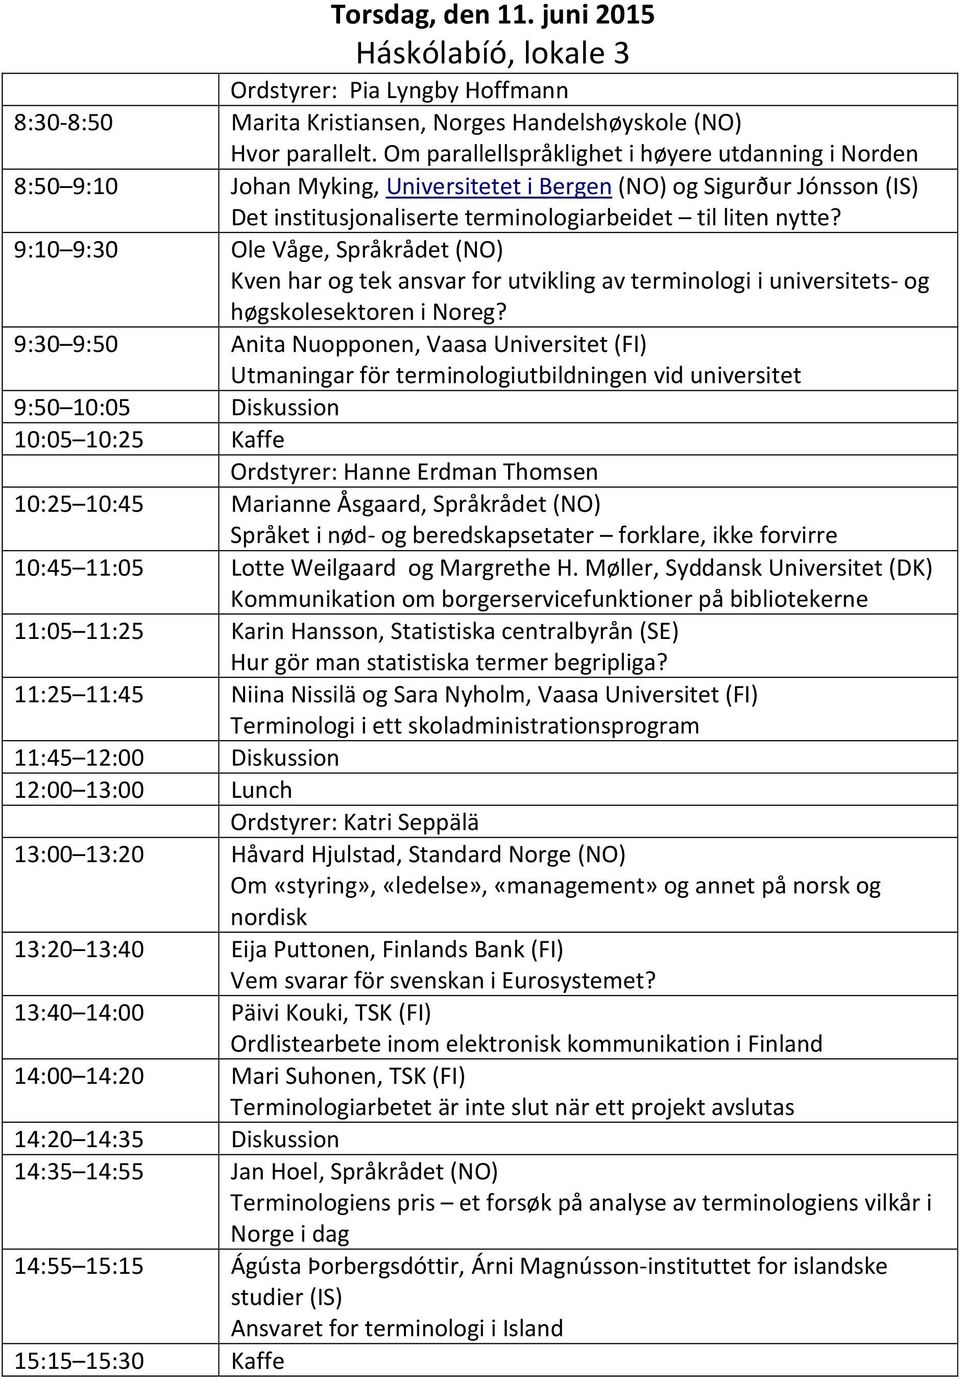 9:10 9:30 Ole Våge, Språkrådet (NO) Kven har og tek ansvar for utvikling av terminologi i universitets- og høgskolesektoren i Noreg?